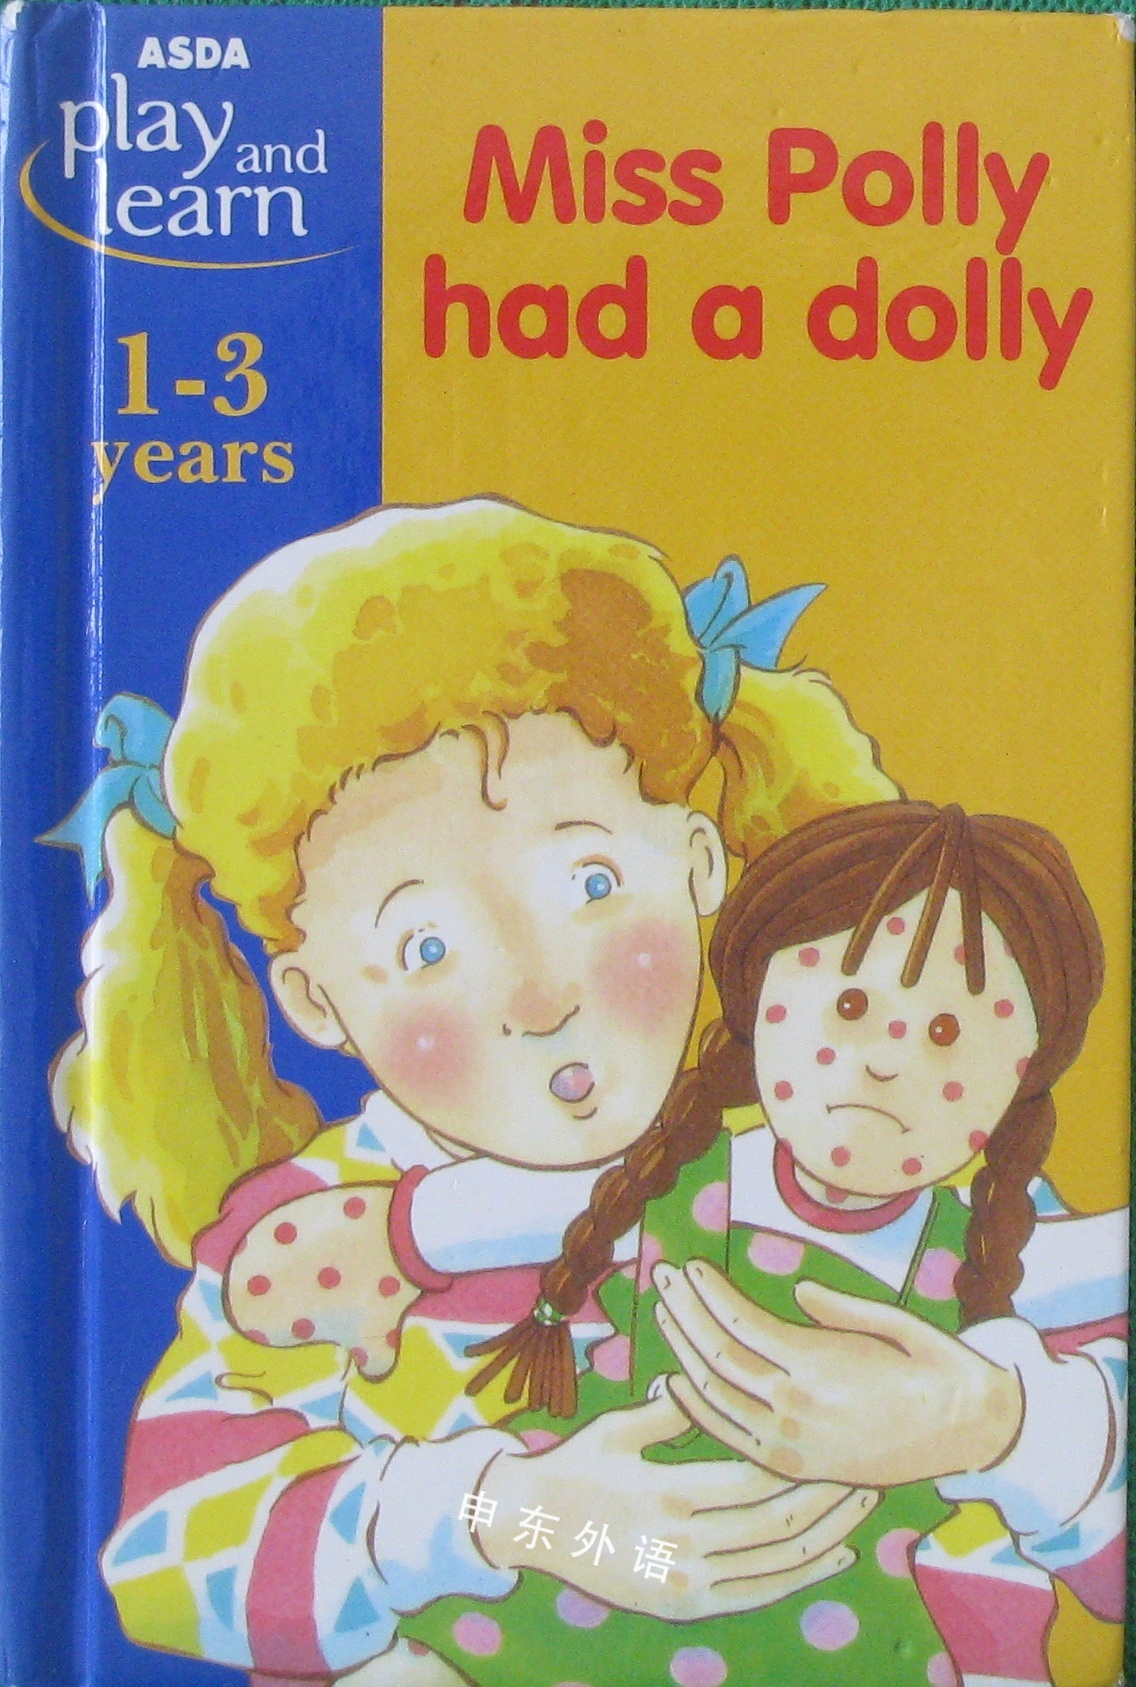 Asda Play And Learn 1 3 Years Miss Polly Had A Dolly 教育相关 儿童图书 进口图书 进口书 原版书 绘本书 英文原版图书 儿童纸板书 外语图书 进口儿童书 原版儿童书